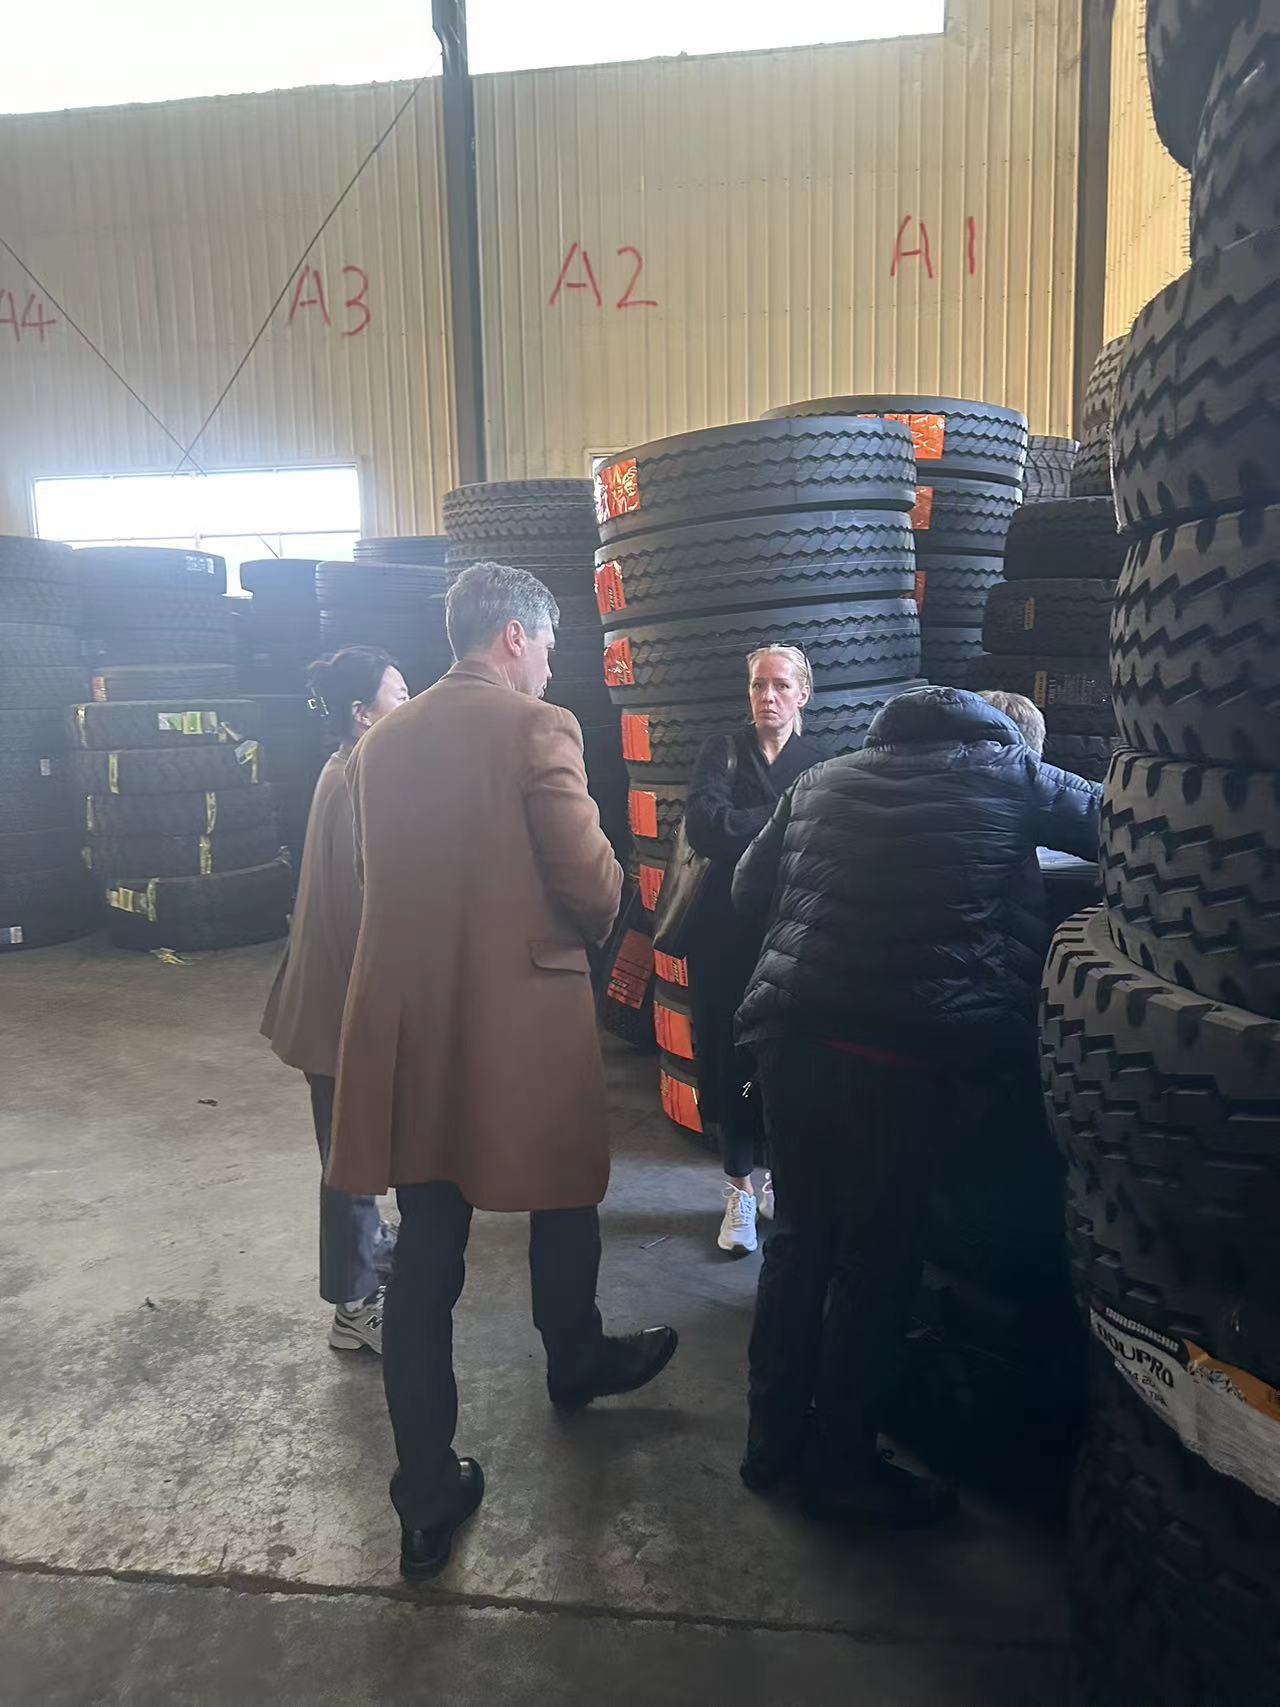 Посещение российским клиентом офиса и склада шин Keuck для переговоров о бизнесе по производству шин